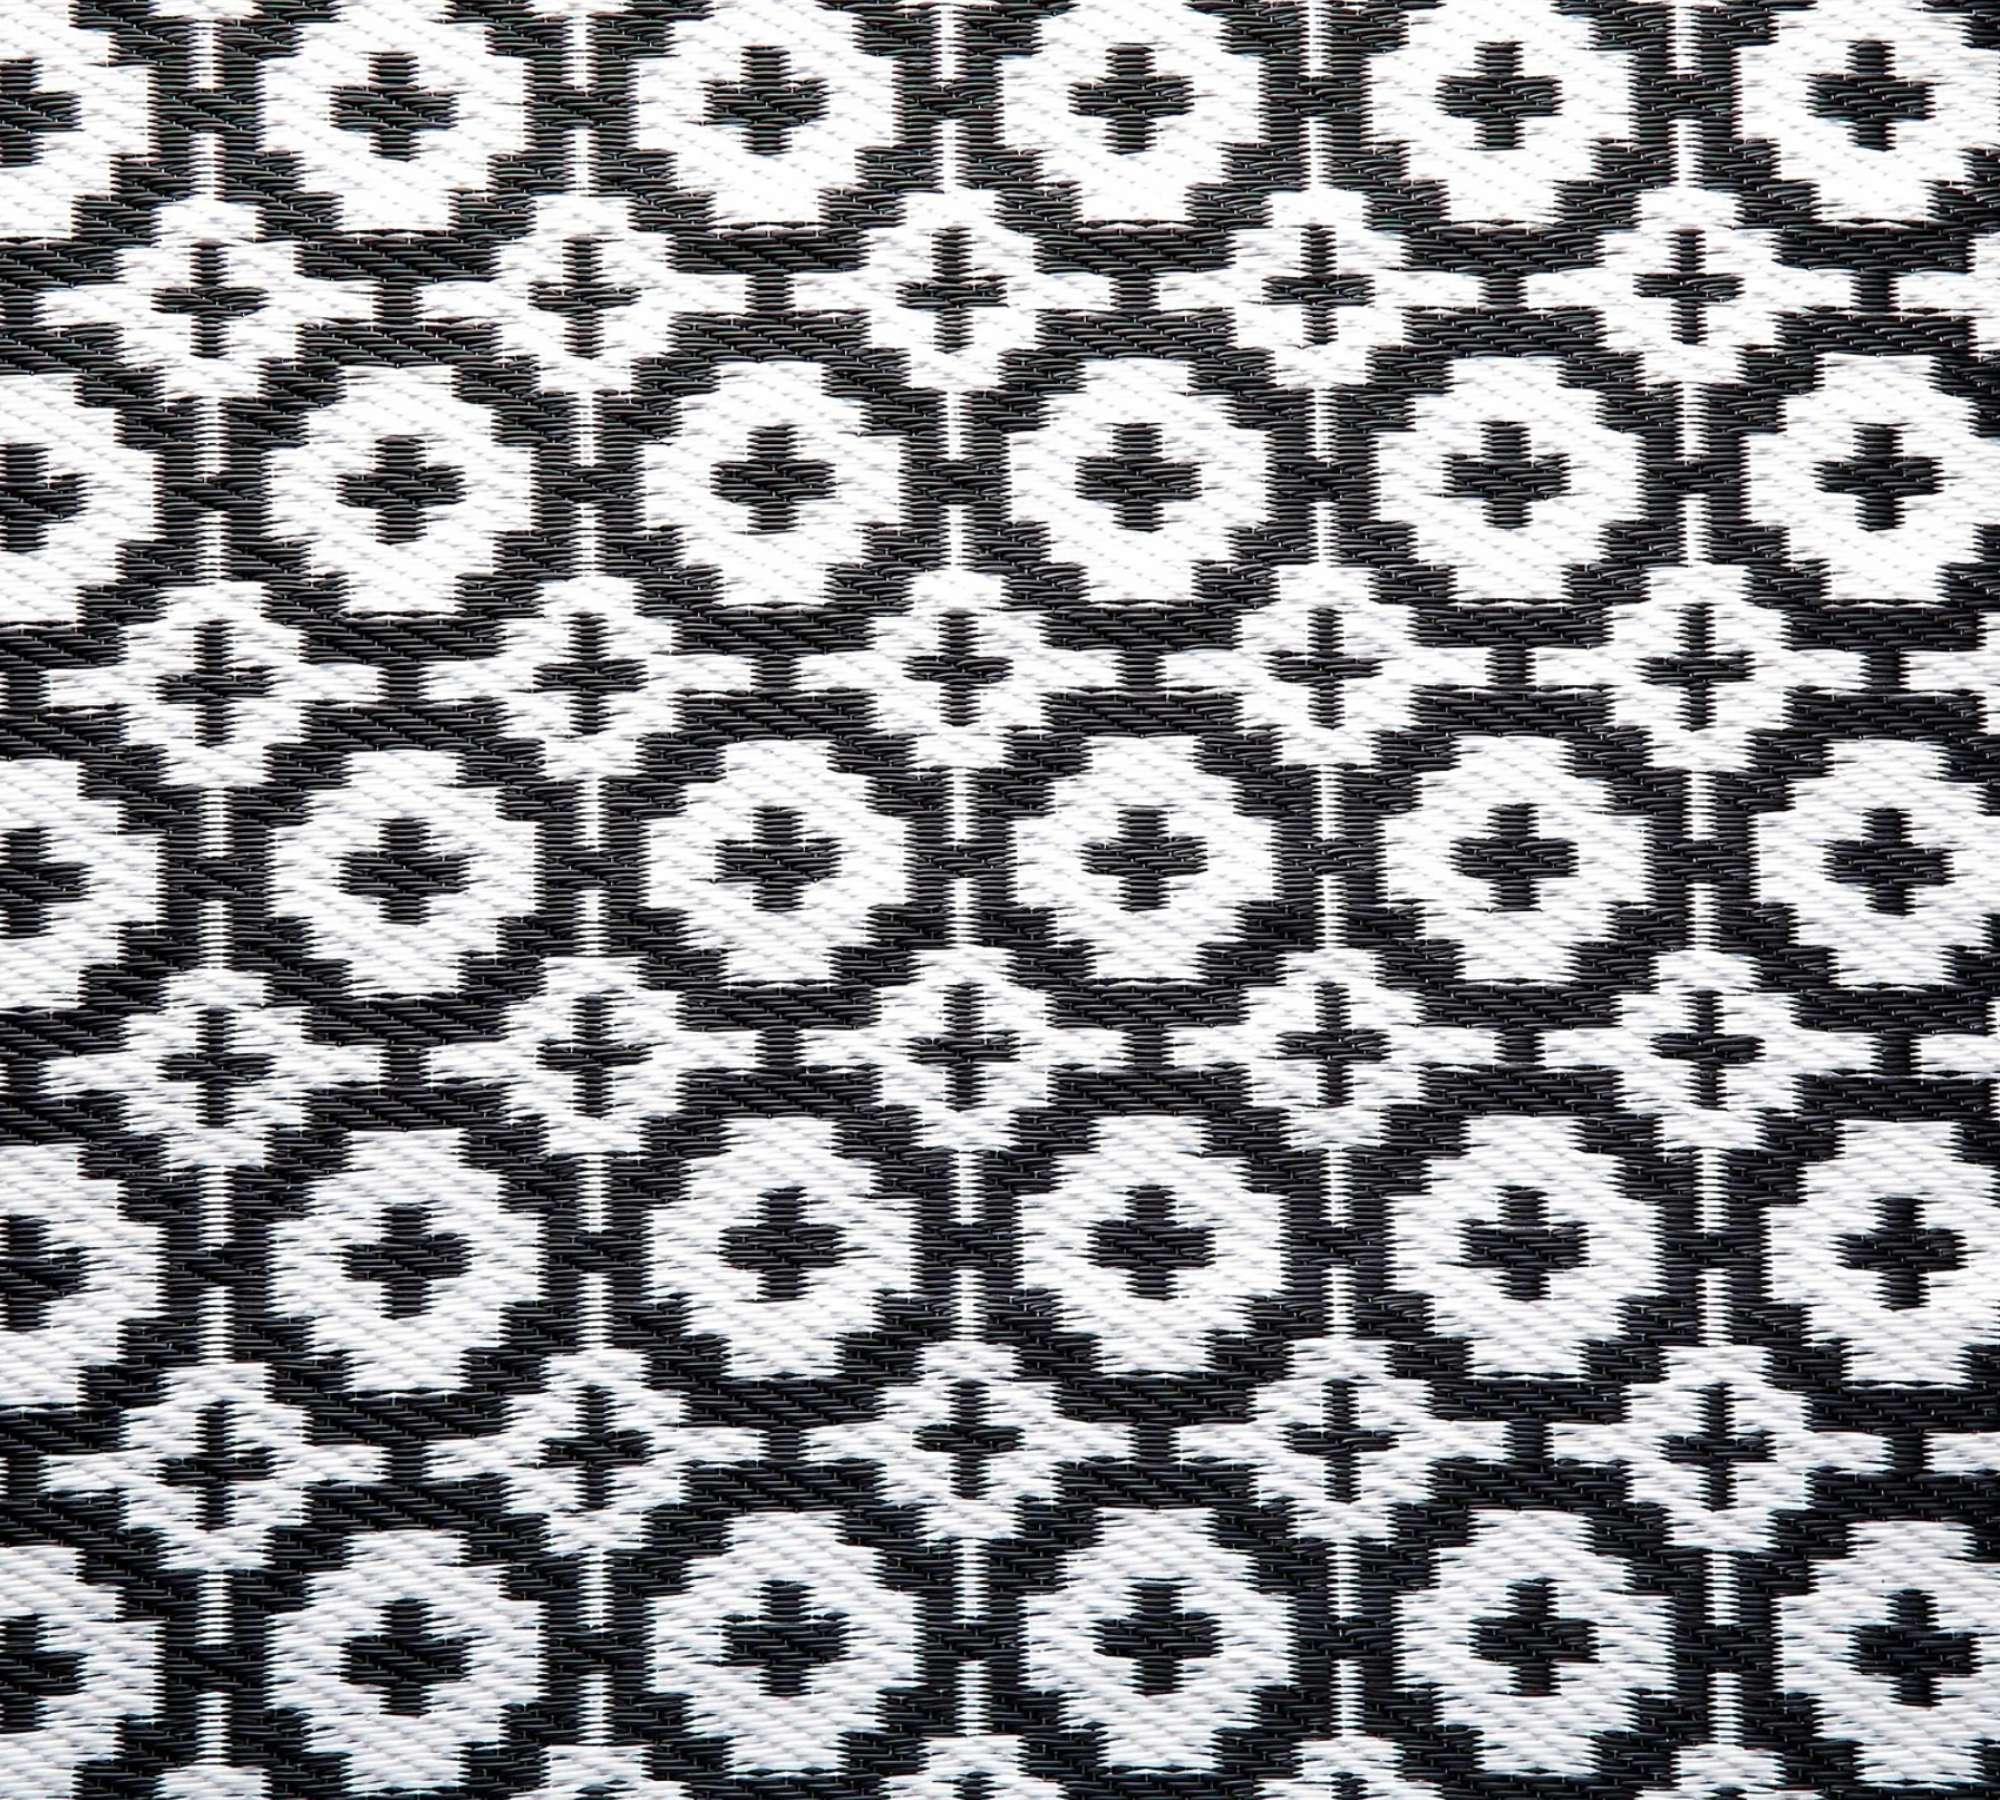 Outdoorteppich Ethno-Muster Schwarz/Weiß 100 x 150 cm